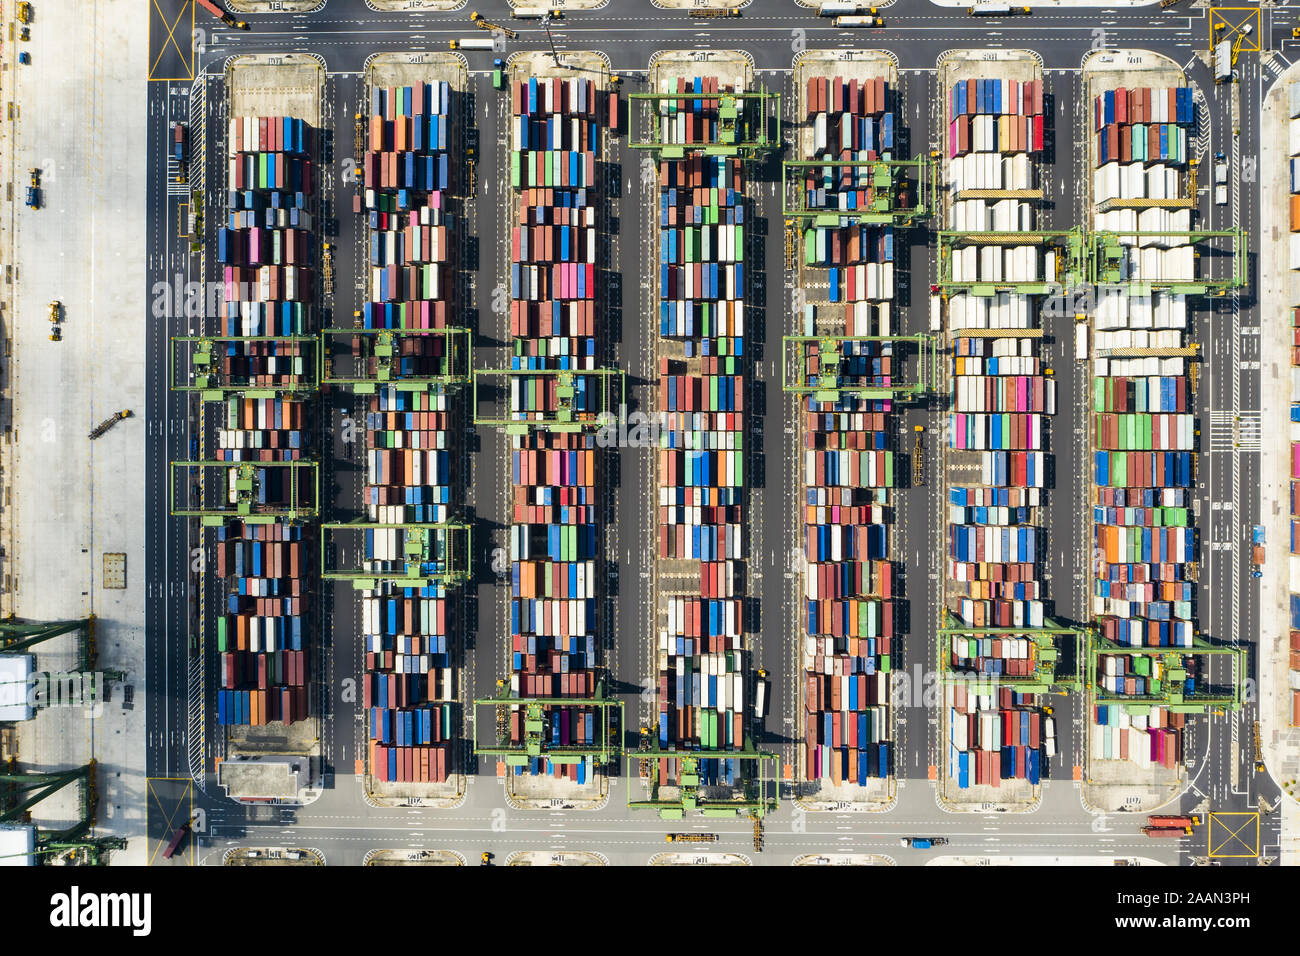 Vista desde arriba, la impresionante vista aérea del puerto de Singapur con miles de contenedores de color listos para cargar en los buques de carga. Foto de stock